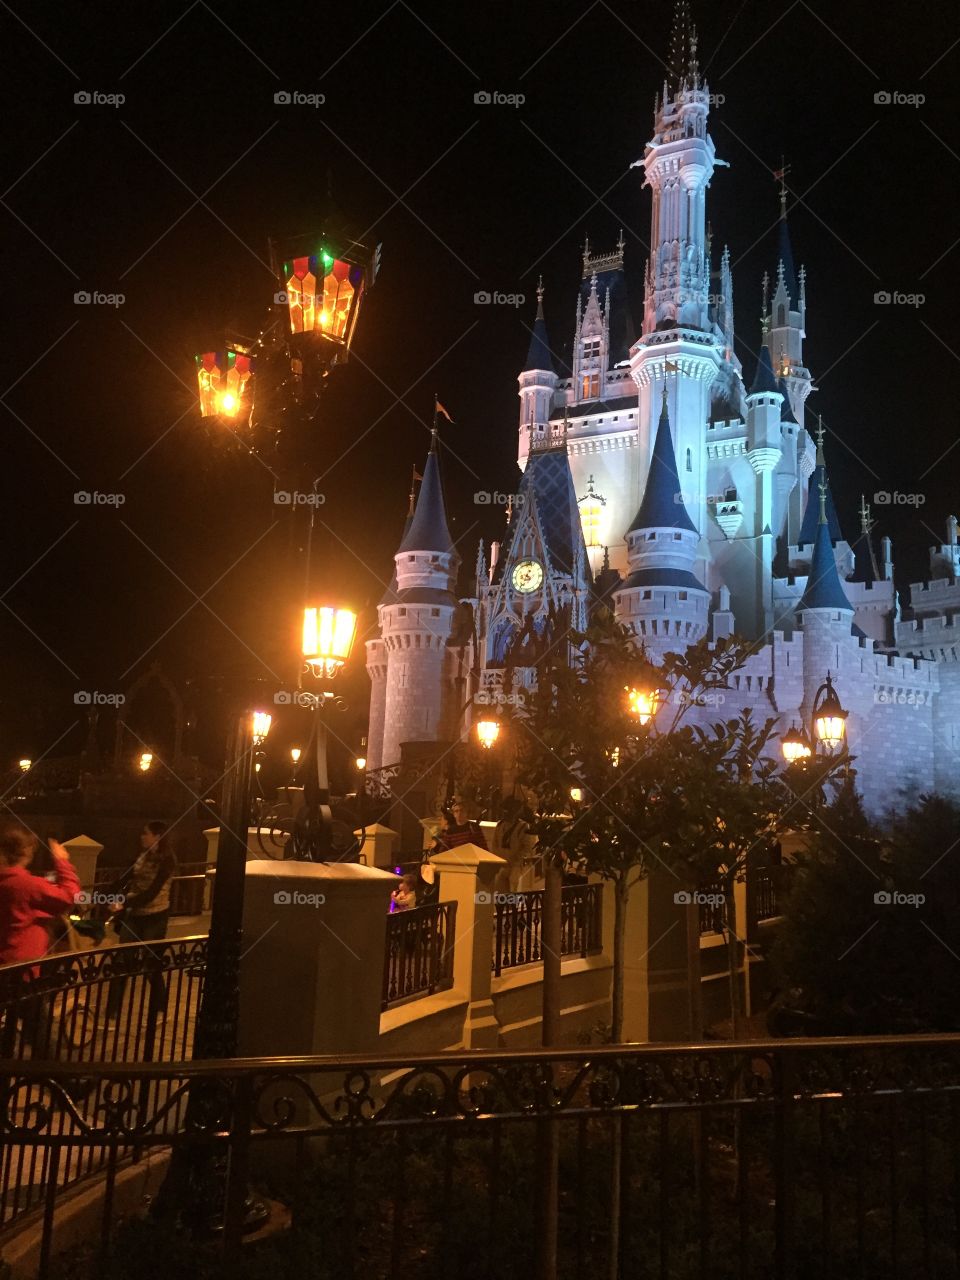 Orlando, Fl Cinderella's Castle